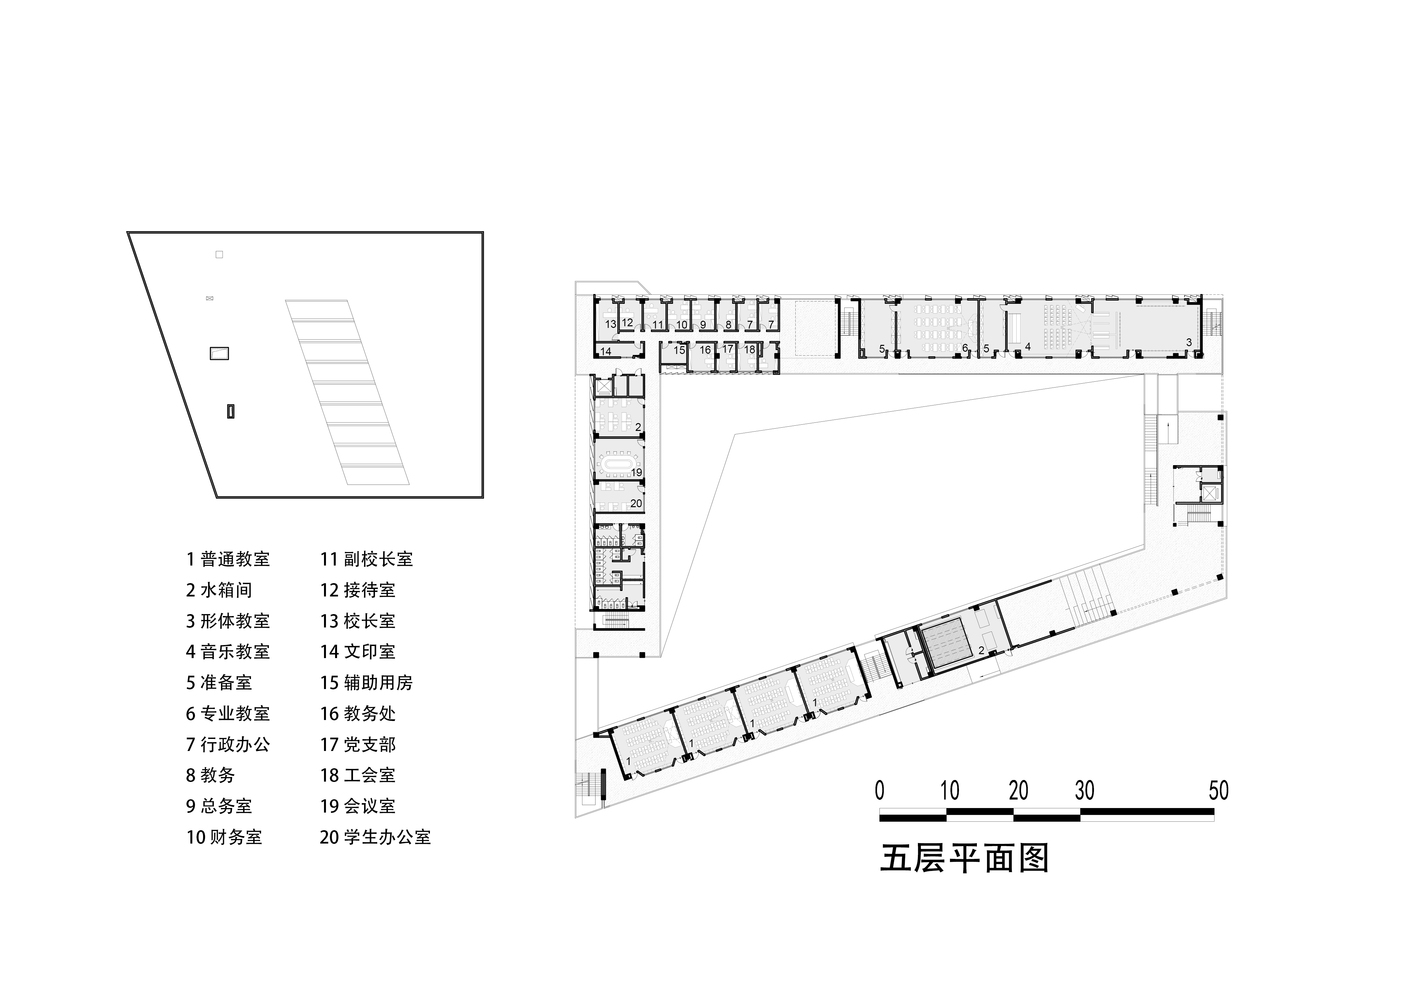 上海唐镇新市镇配套中学建筑设计 / 华建集团上海建筑设计研究院